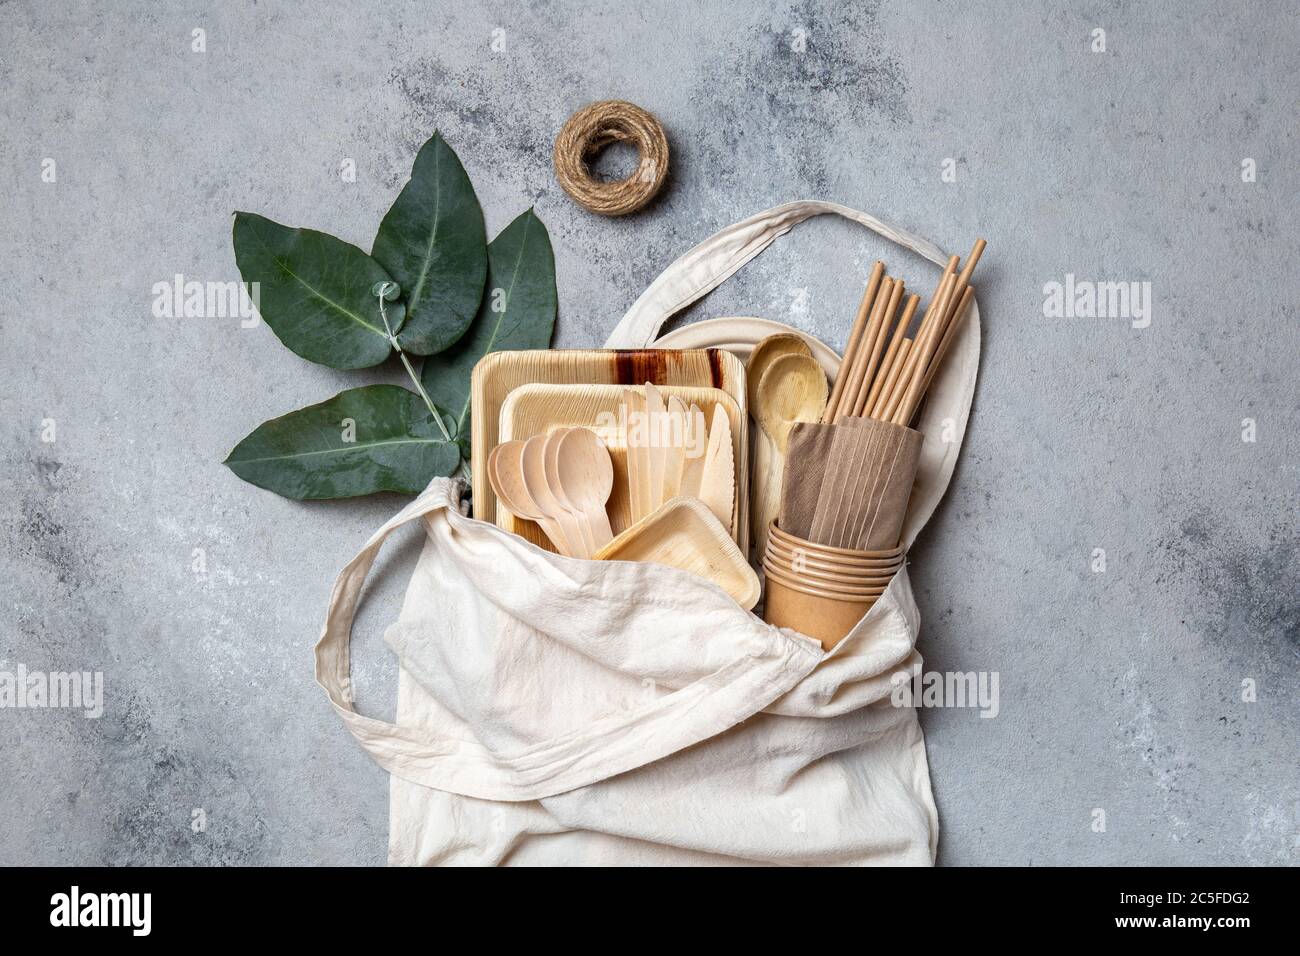 Vaisselle en papier et bois éco-artisanale. Gobelets en papier, vaisselle, sac, assiettes et couverts en bois dans un sac en lin. Recyclage ou concept écologique Banque D'Images